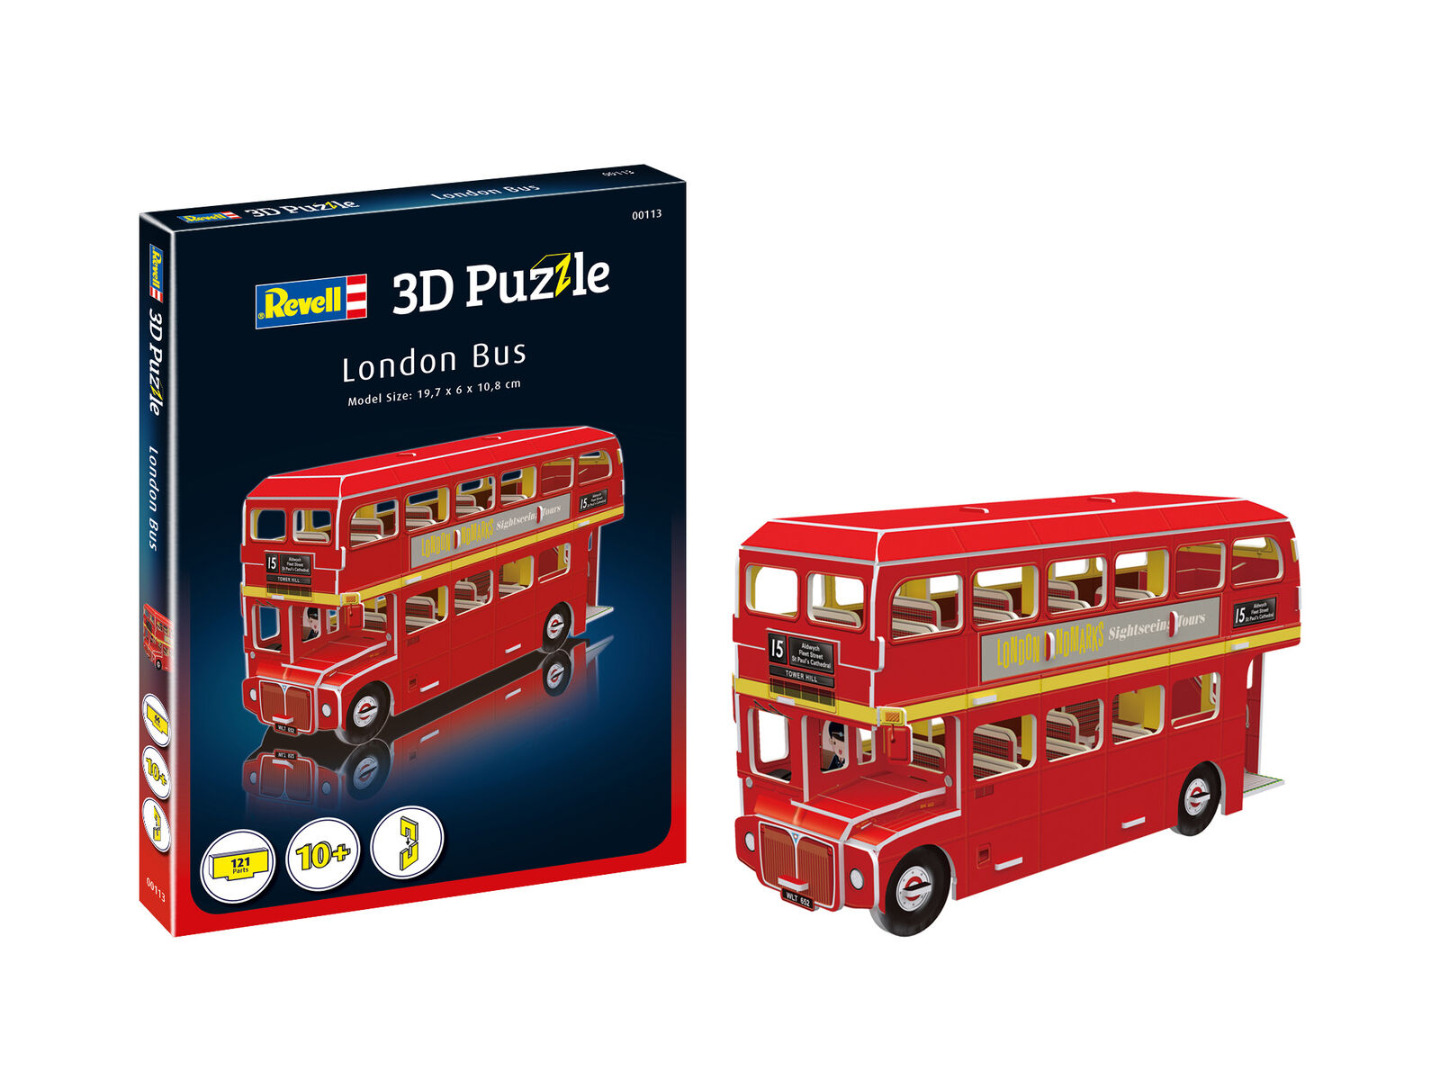 Revell 3D Puzzle London Bus (19.7 x 10.8cm)